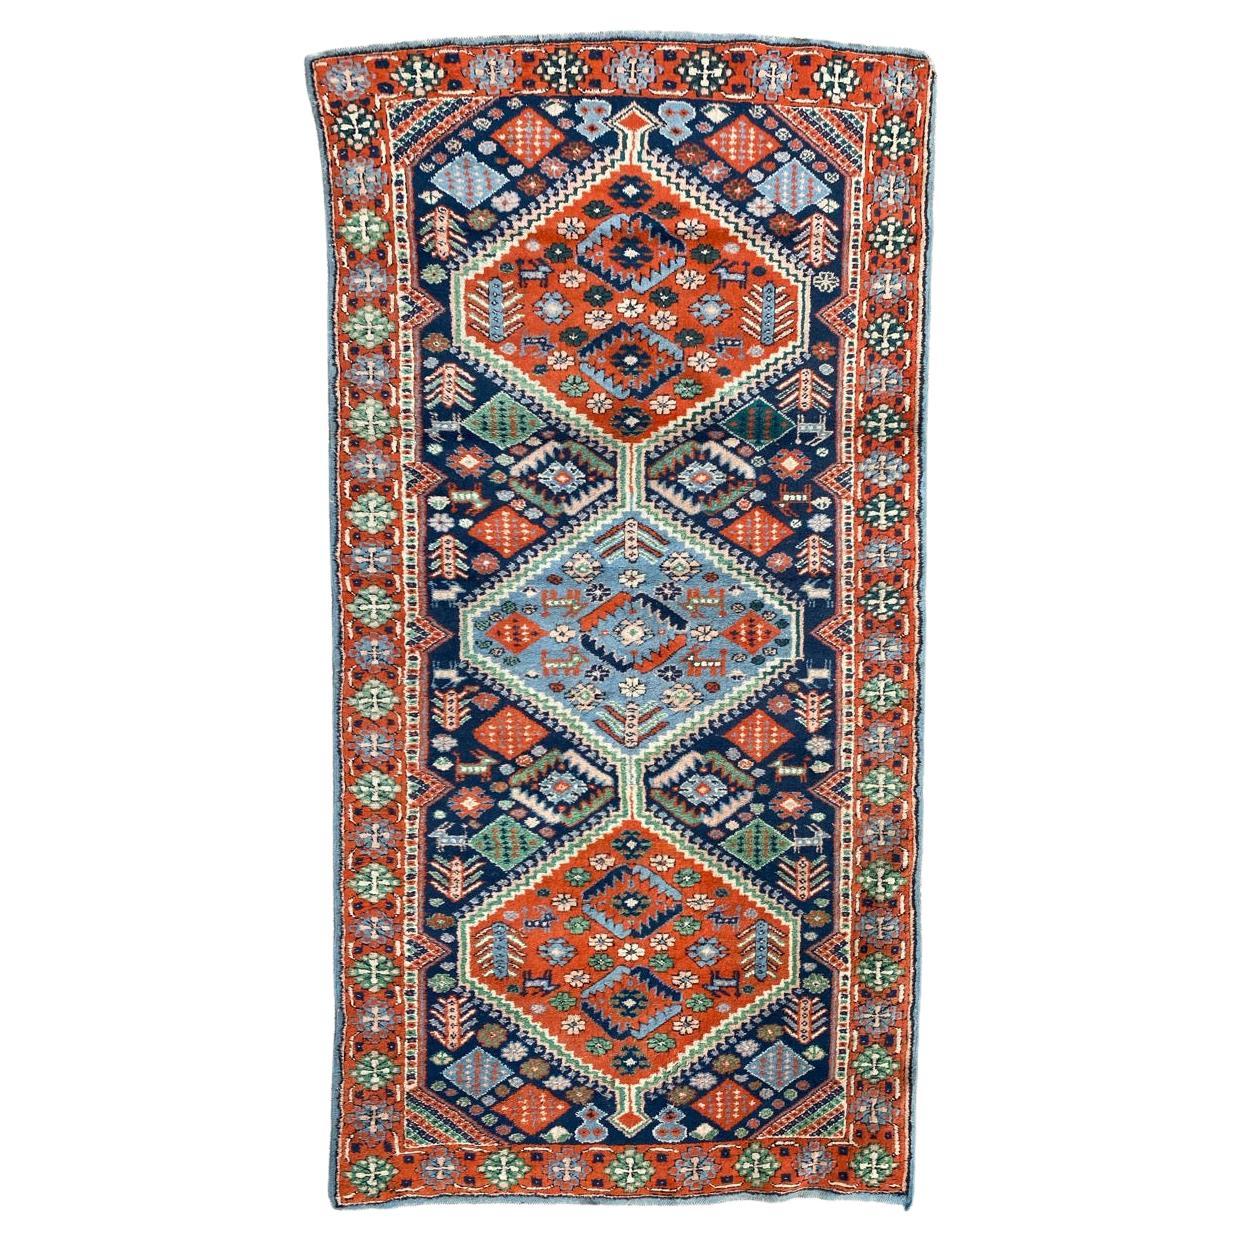 Bobyrug's Hübscher Türkischer Vintage-Teppich